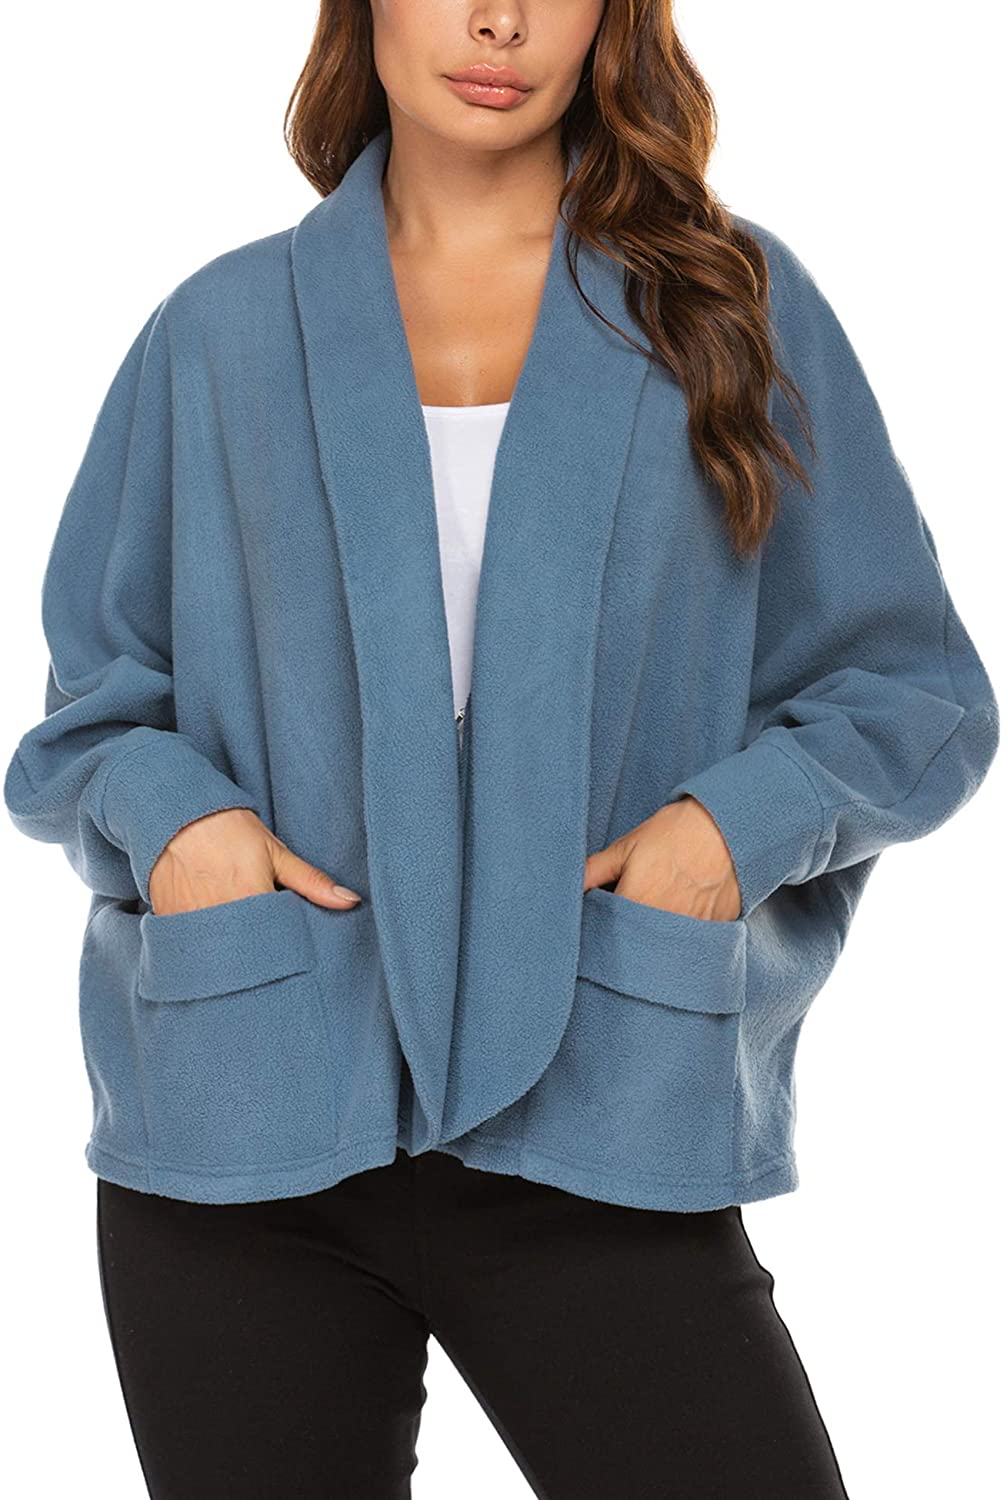 Ekouaer Lightweight Warmth Bed Jacket Nightgown Robe | eBay